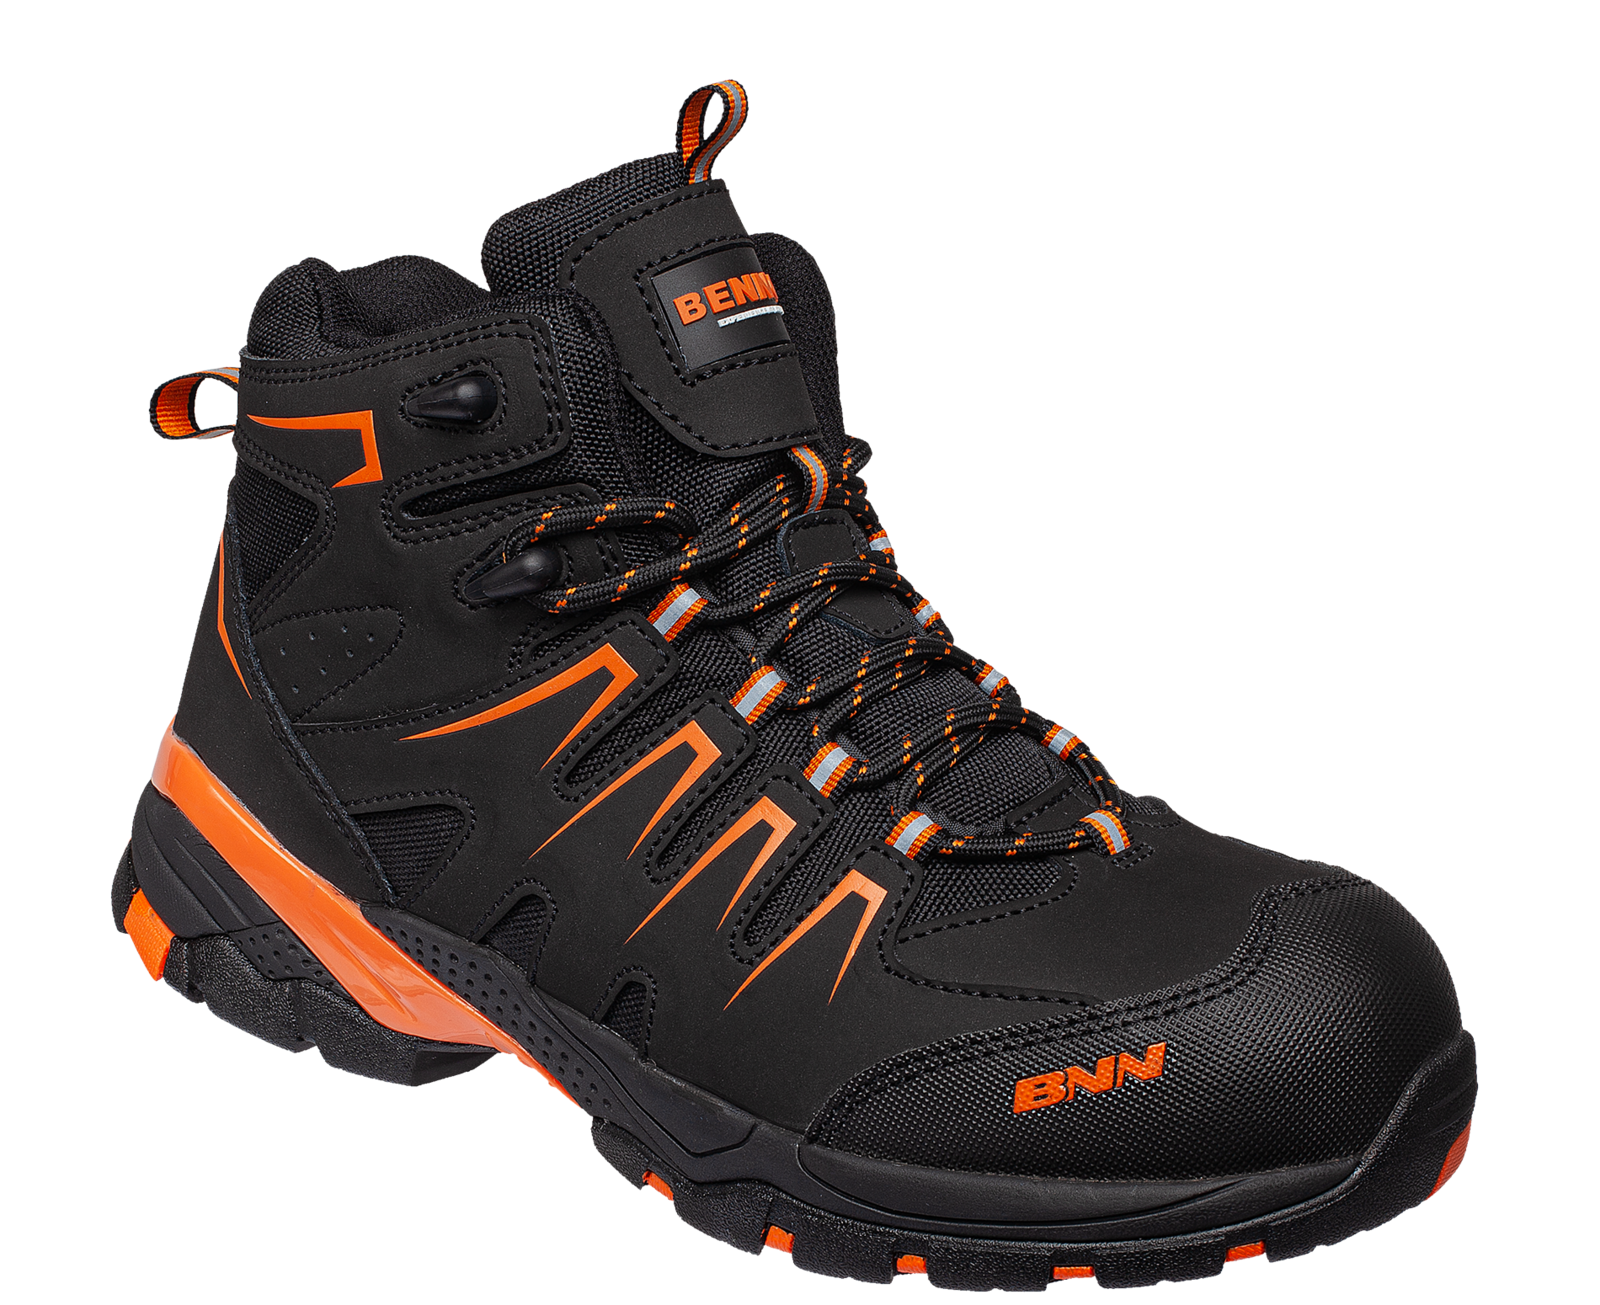 Bezpečnostná členková obuv Bennon Orlando XTR S3 NM High - veľkosť: 48, farba: čierna/oranžová